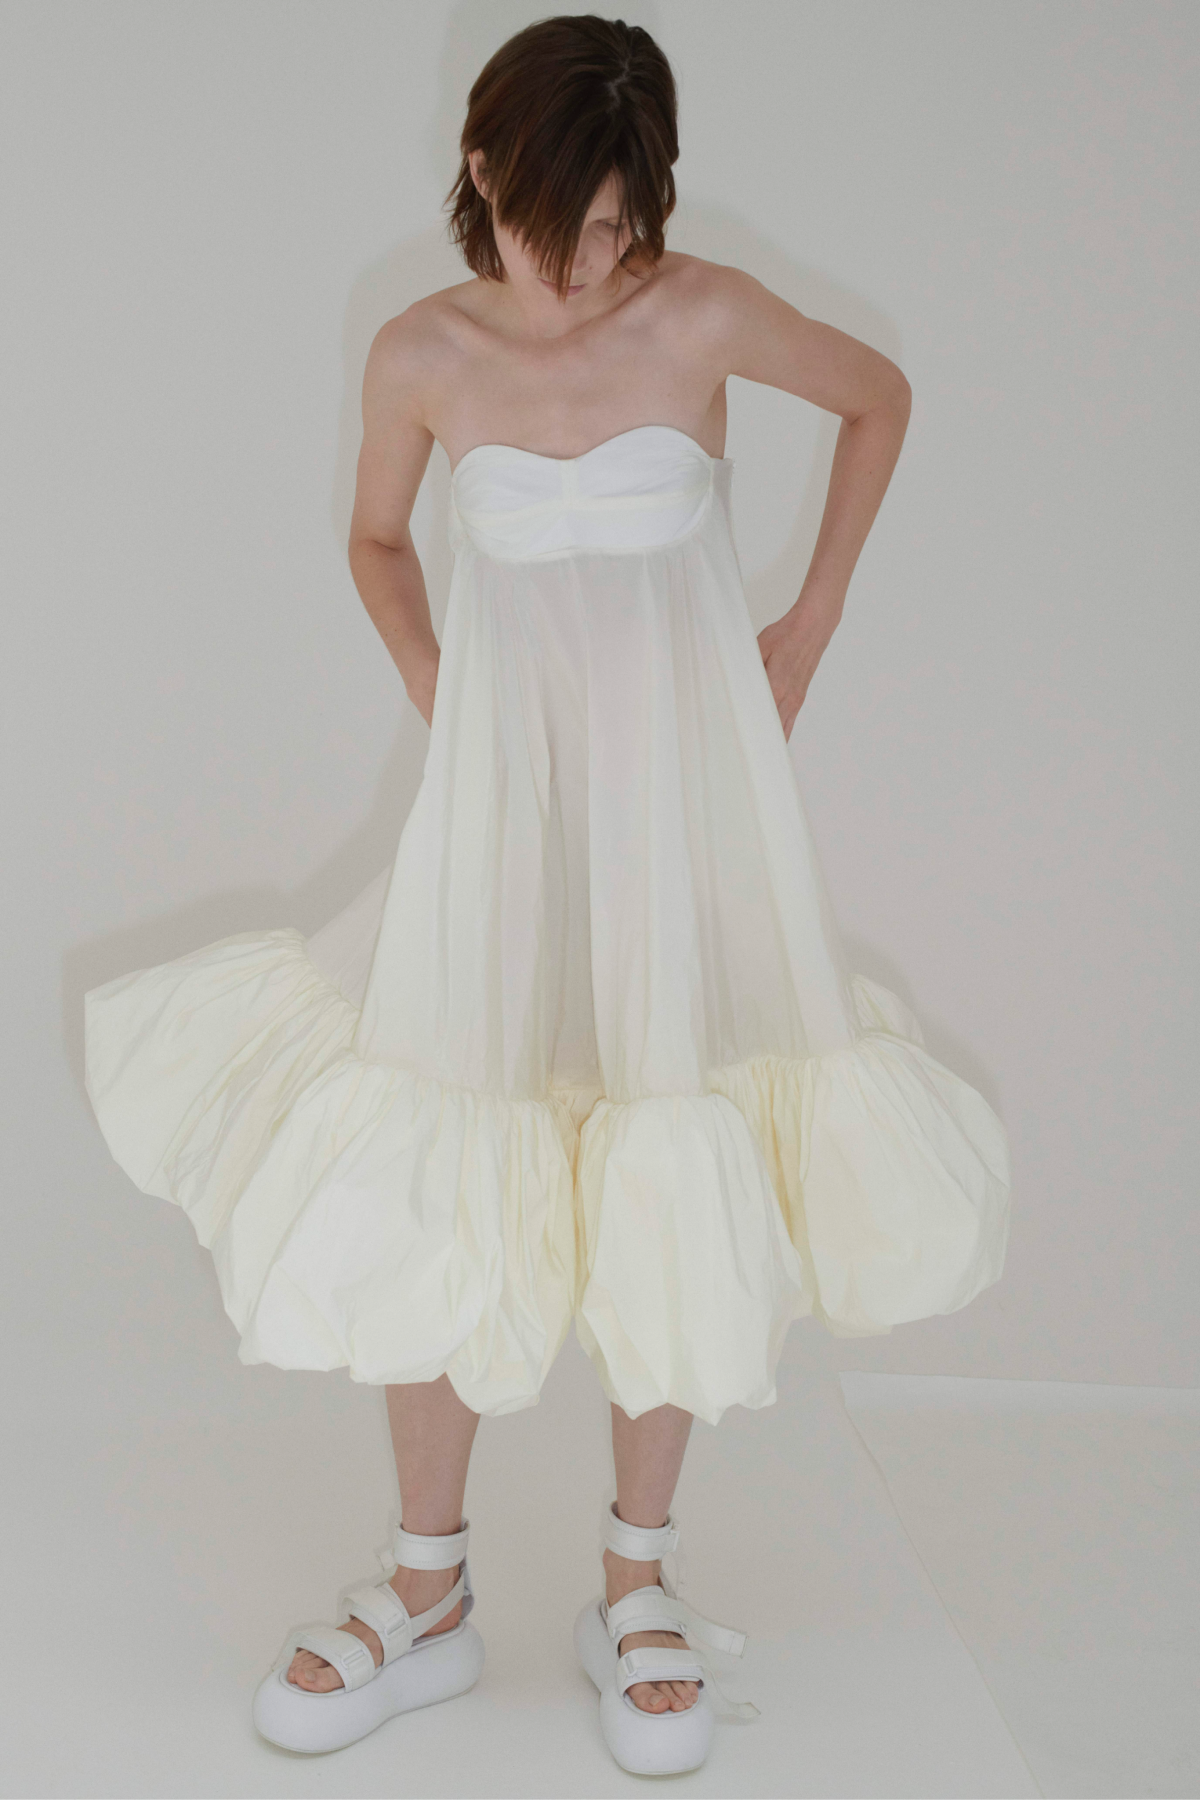 Sportmax представил капсульную коллекцию платьев Bloom (фото 6)